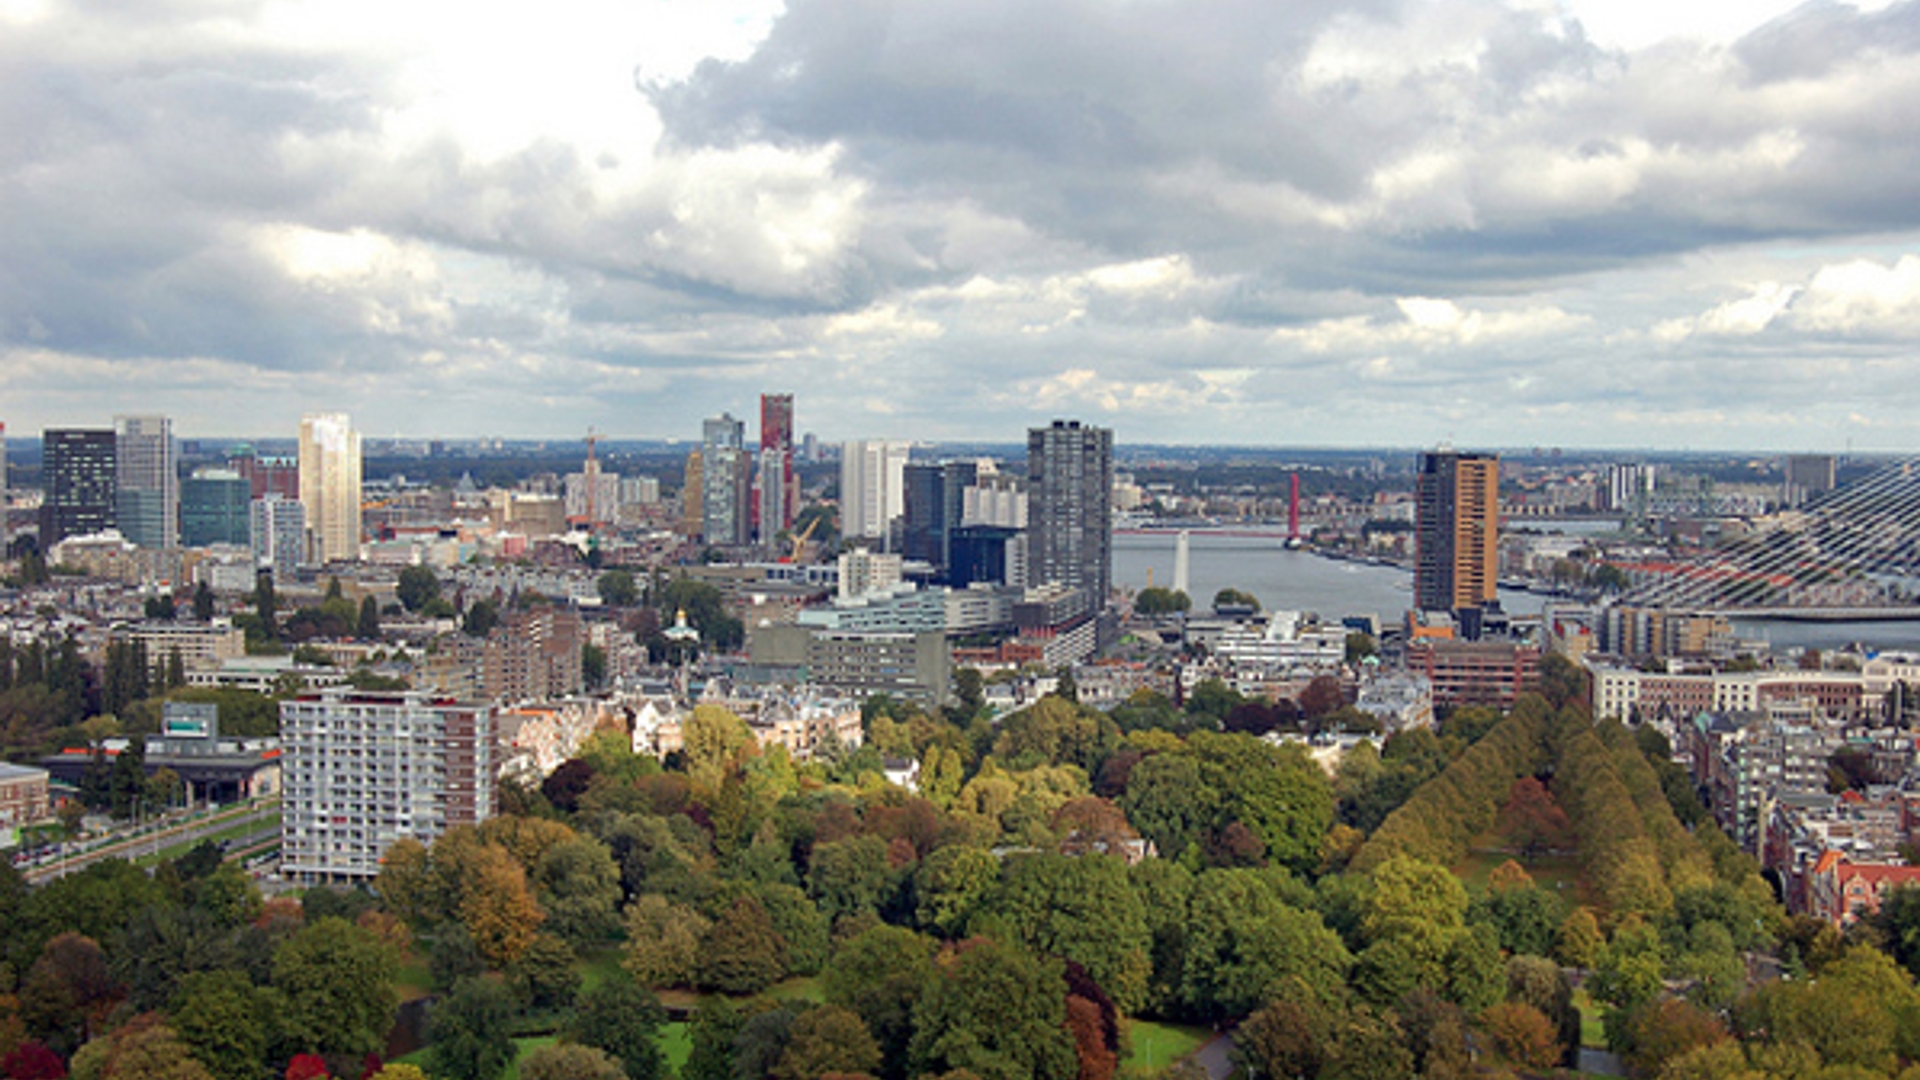 Rotterdam_Alias-0591-Flickr.jpg